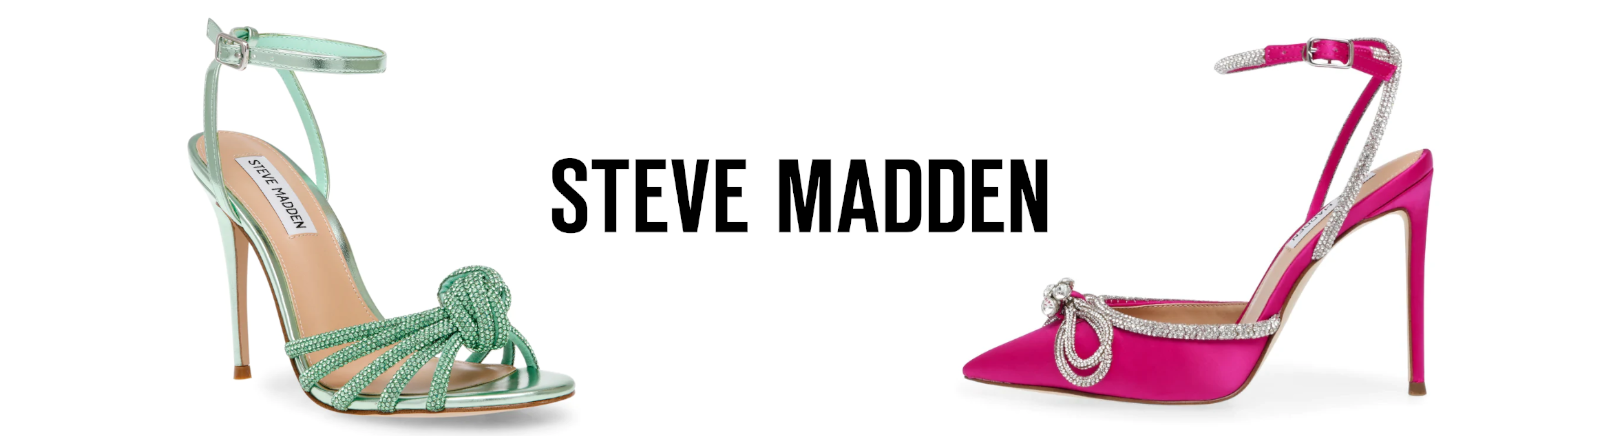 Steve Madden Markenschuhe online entdecken im Juppen Shop